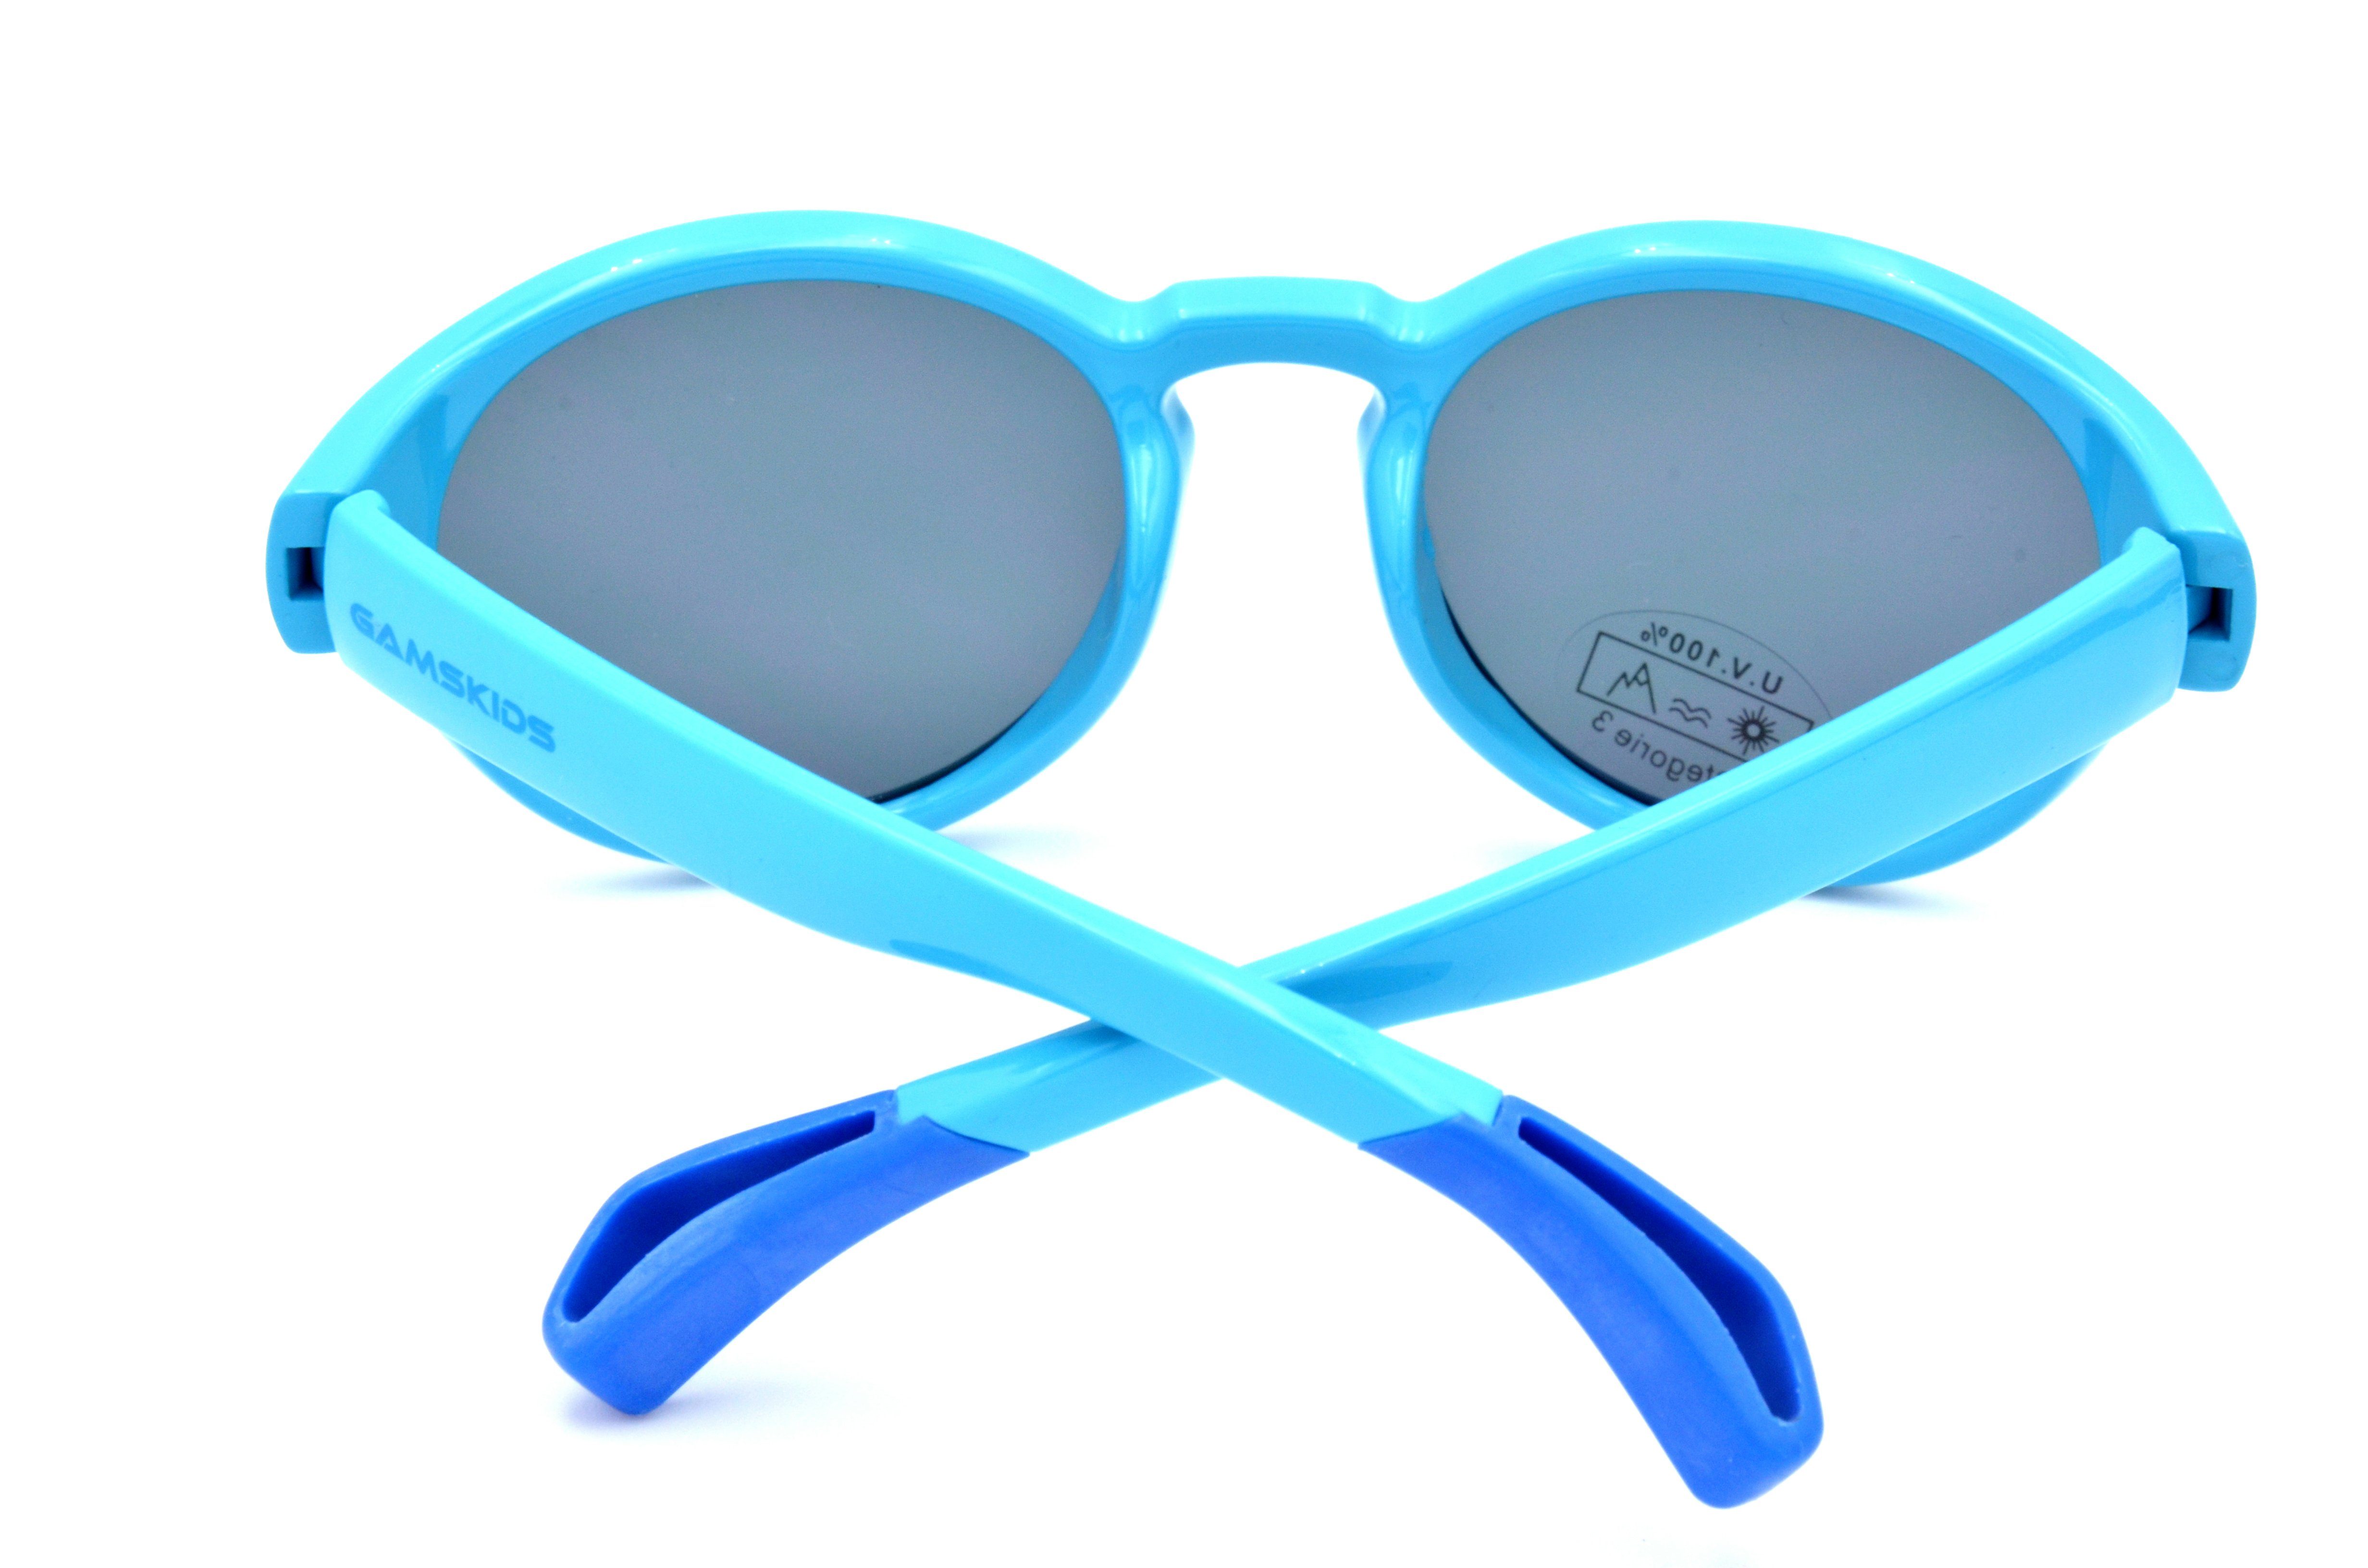 Gamswild Sonnenbrille WK5417 GAMSKIDS blau, Jungen Kleinkindbrille grün, lila Kinderbrille Jahre Unisex, 5-10 kids Mädchen